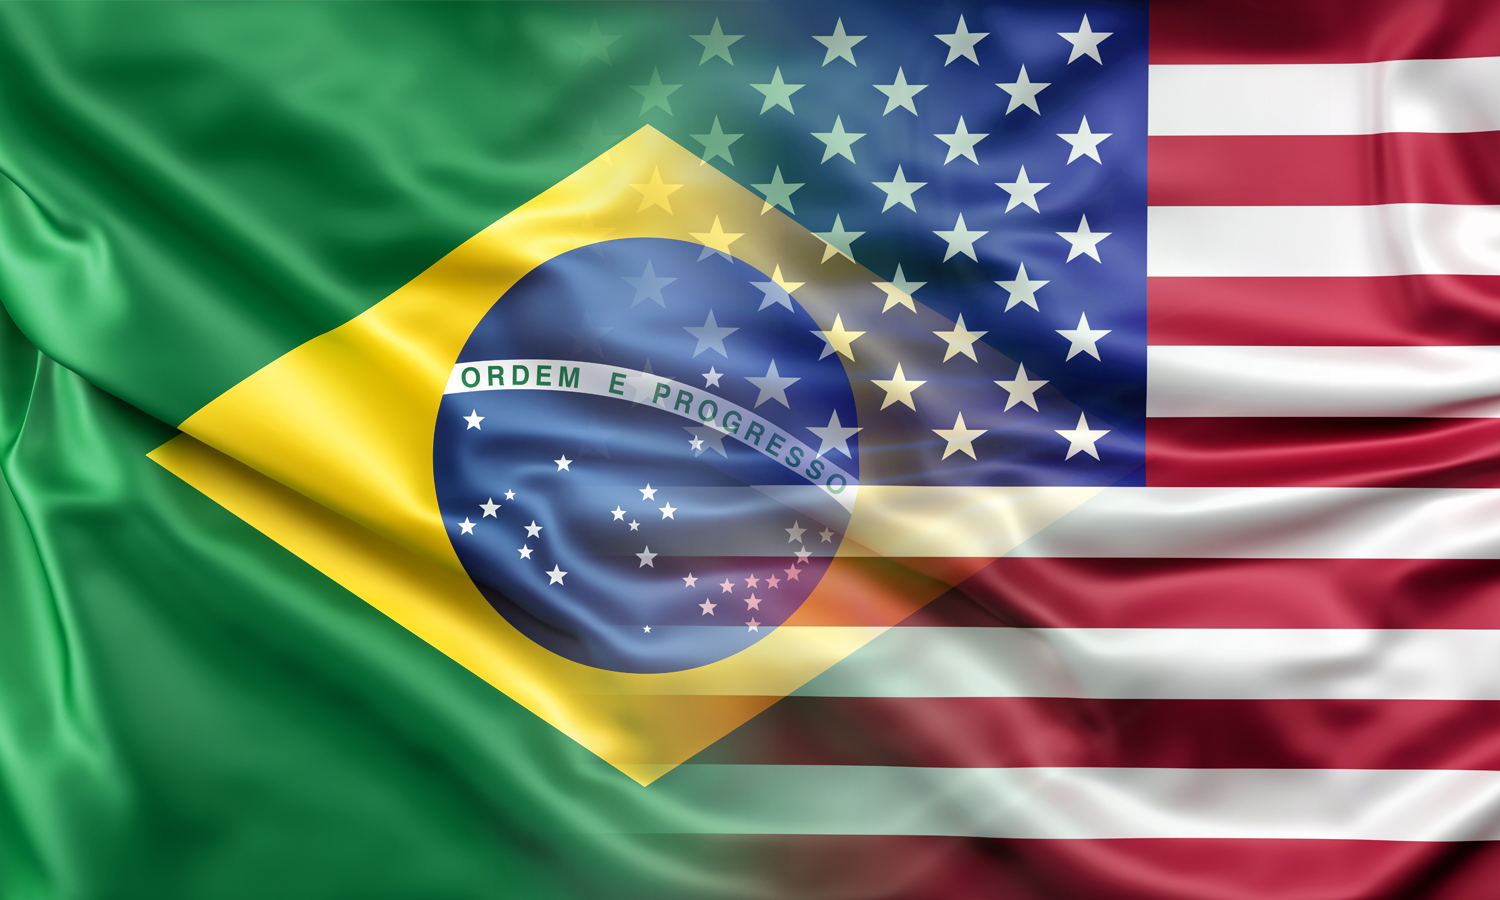 As eleições brasileiras em debate nos EUA Observatório de Política